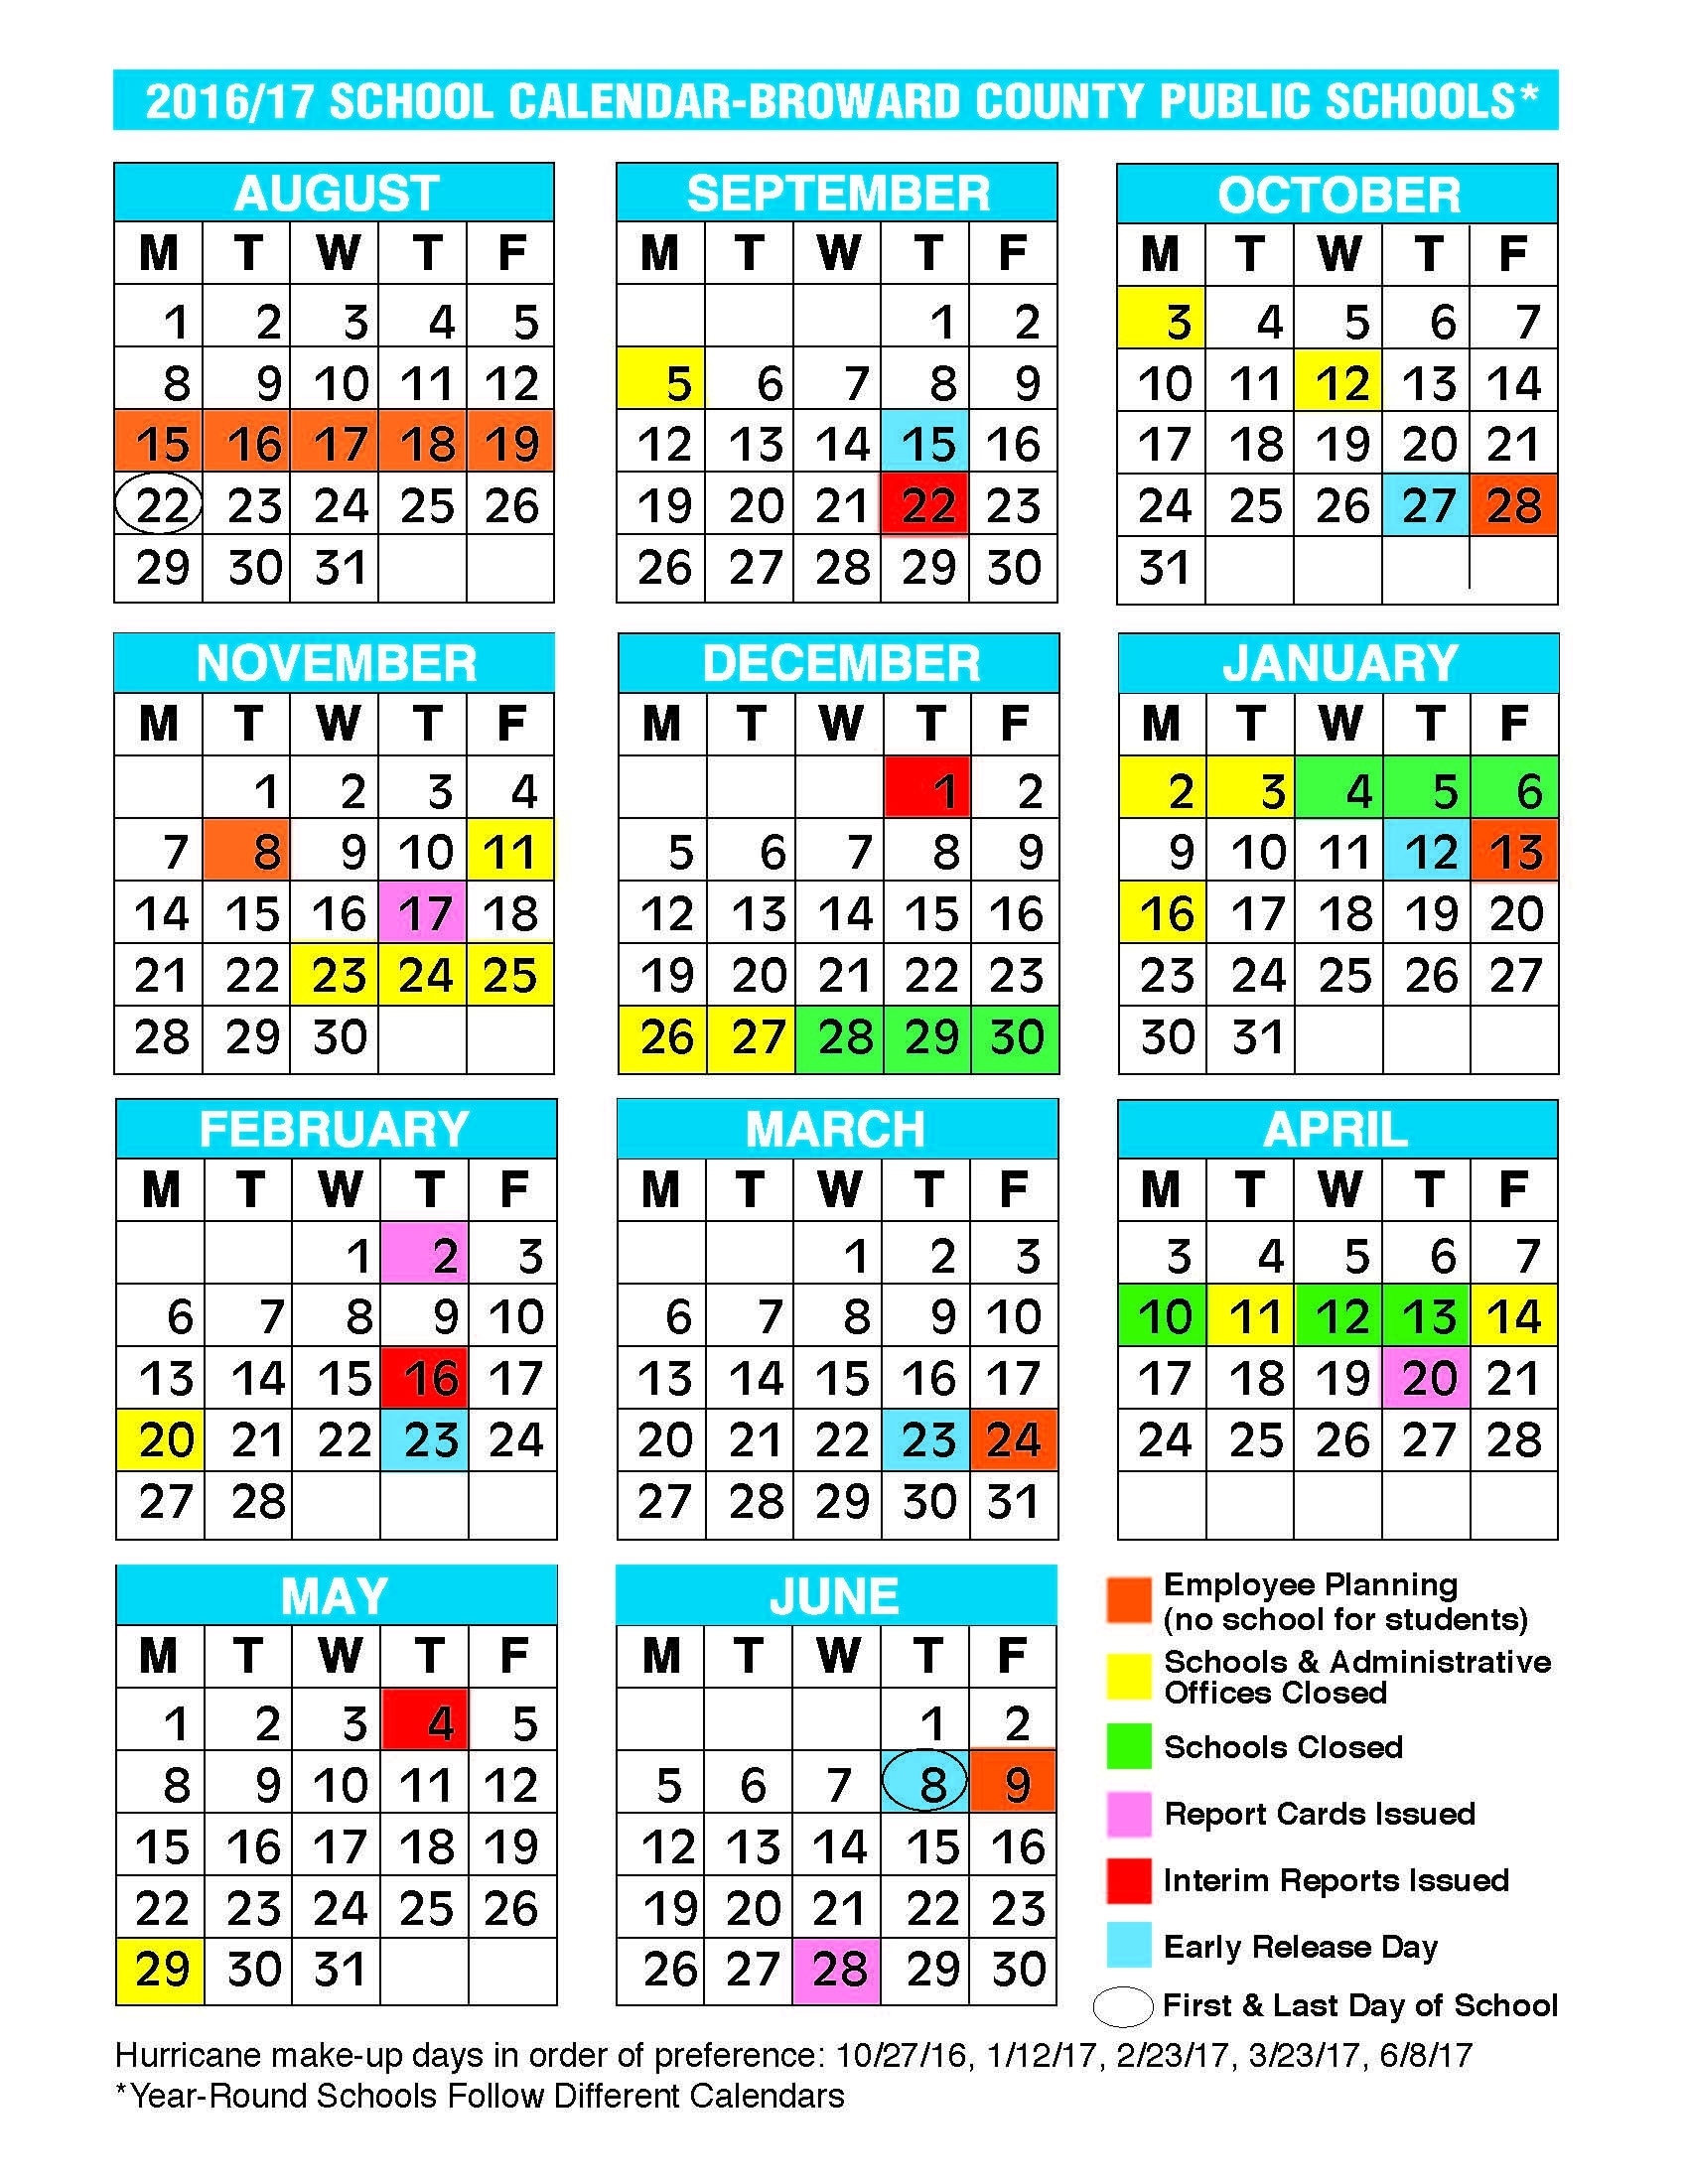 2017 2018 School Calendar Broward 2017 2016 School Calendar Broward Broward County School Calendar